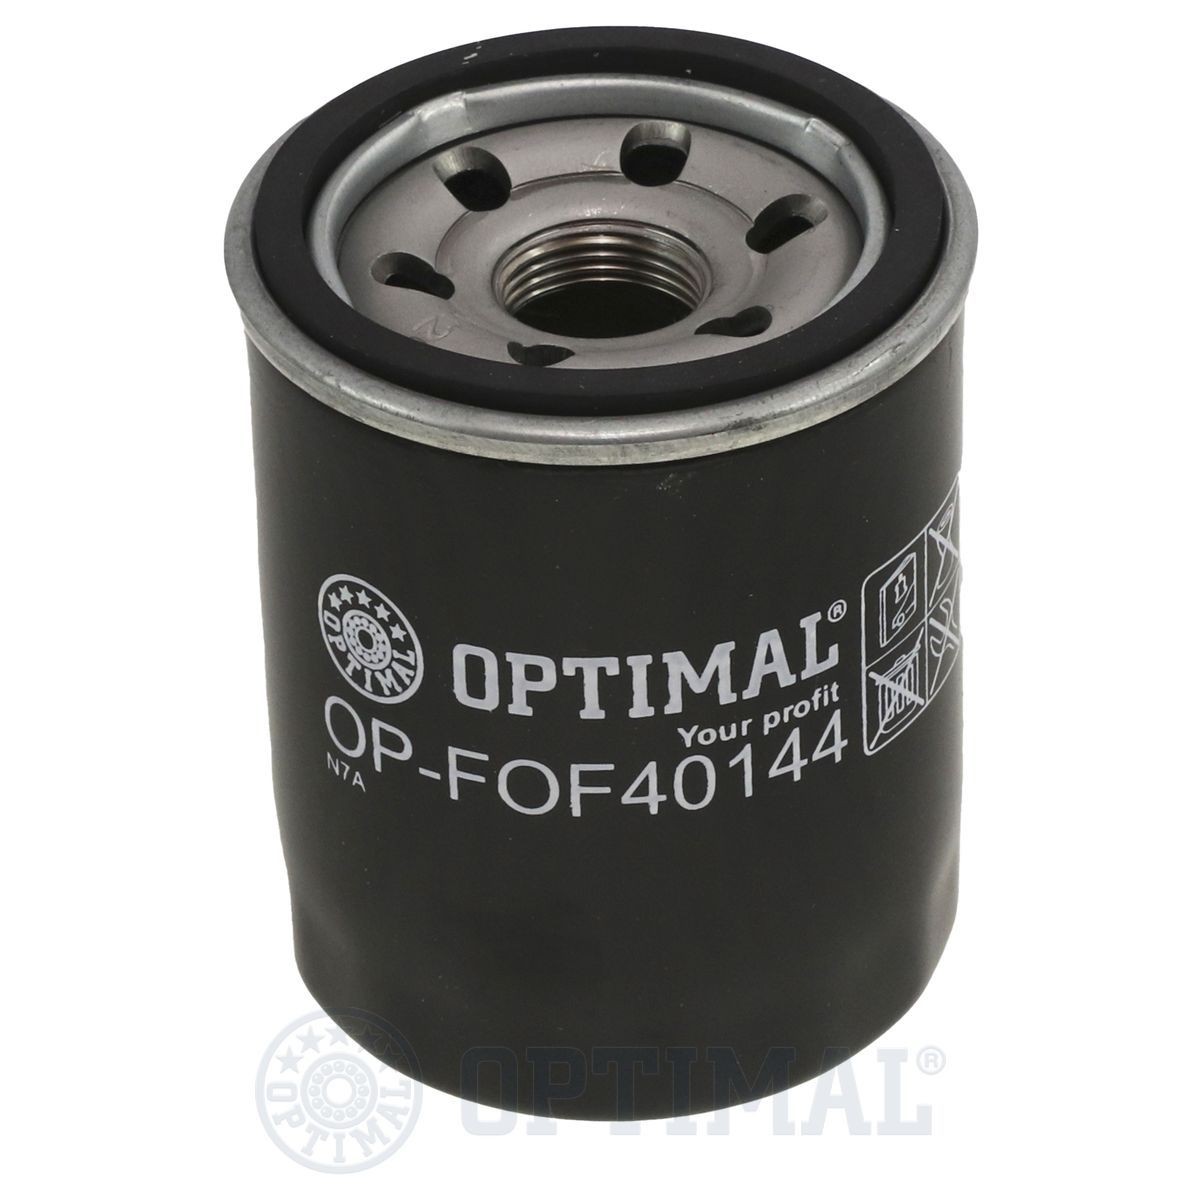 OPTIMAL OP-FOF40144 Filter kit 3 891 893